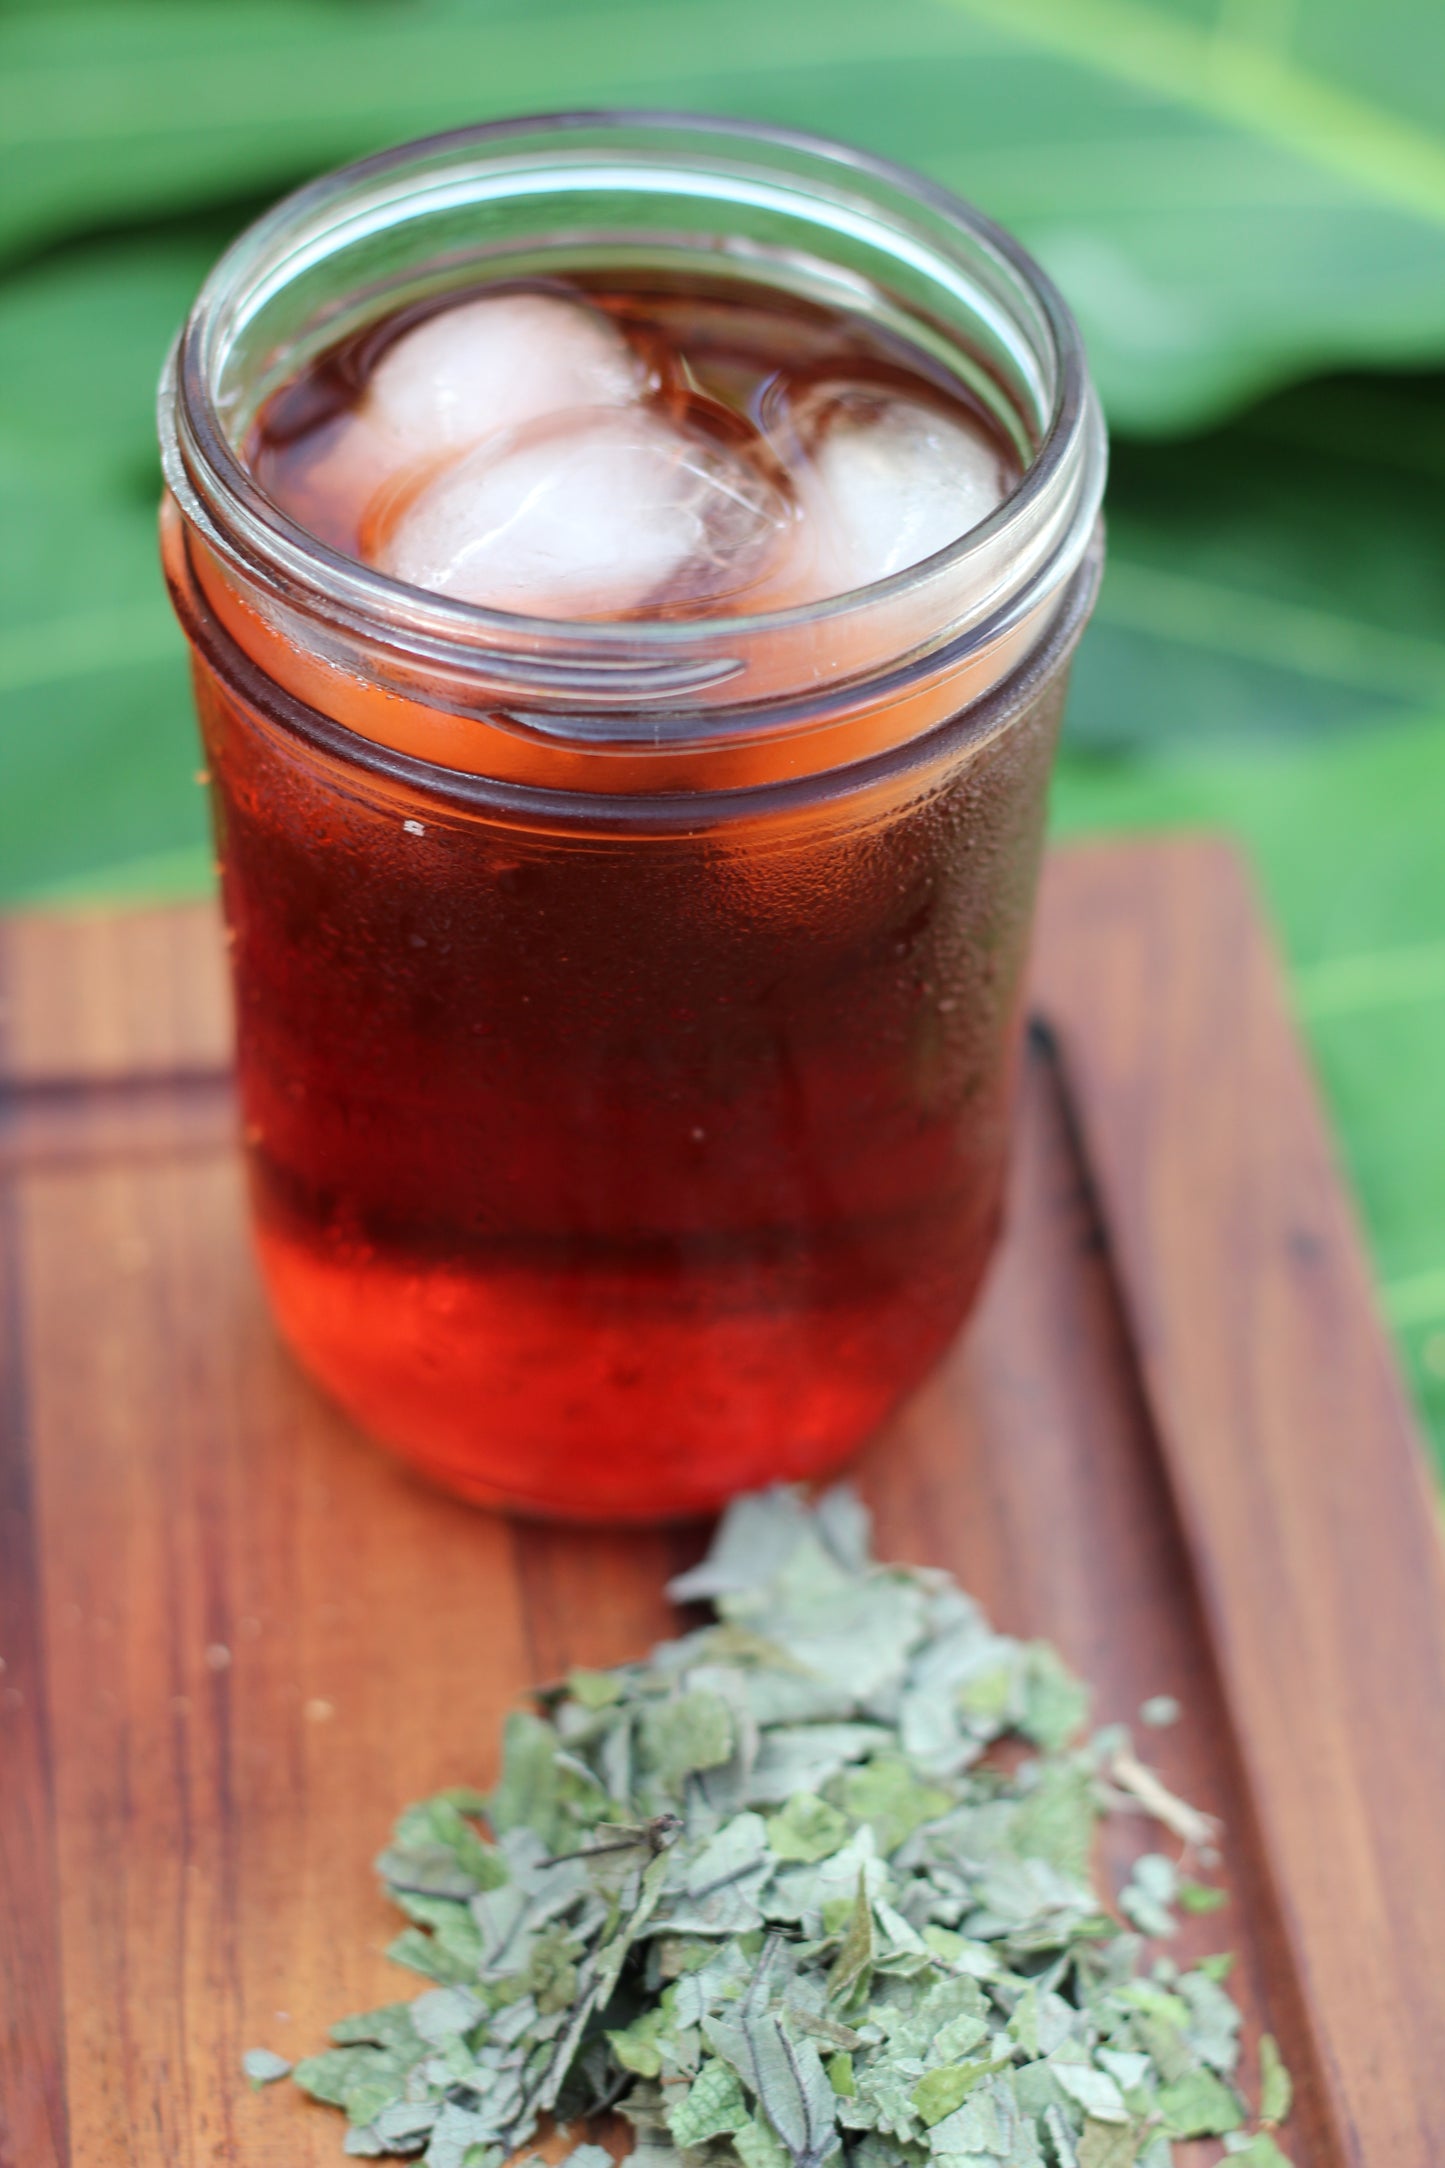 Hawaiian Herbal Tea, Loose Leaf | .75oz